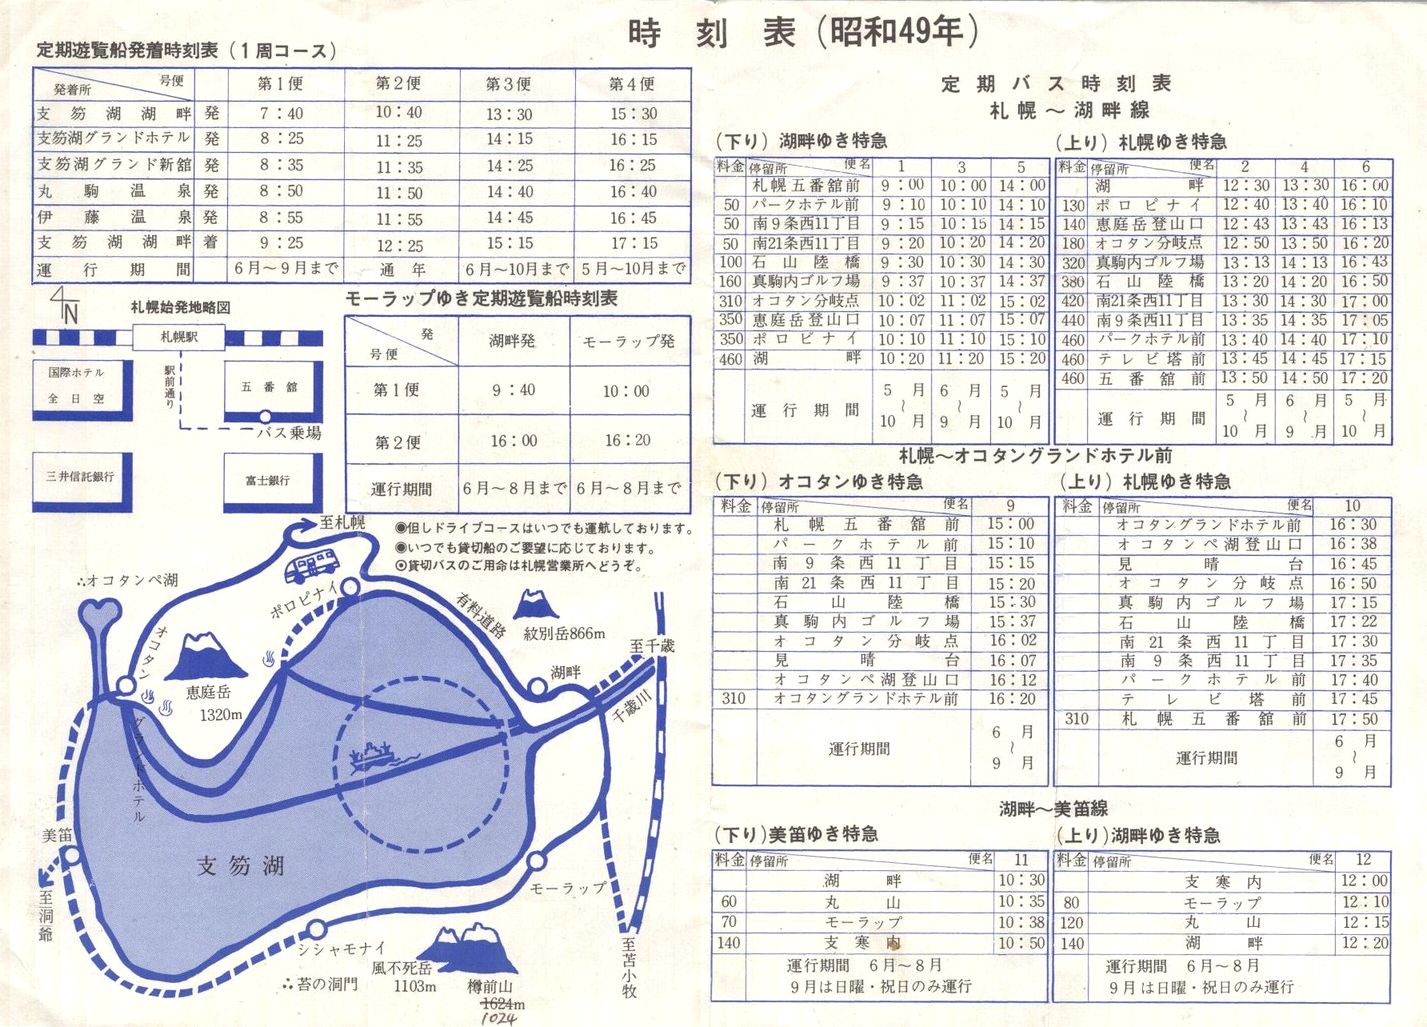 1974-05-01現在_支笏湖観光運輸_「支笏湖ご案内」(時刻表)裏面